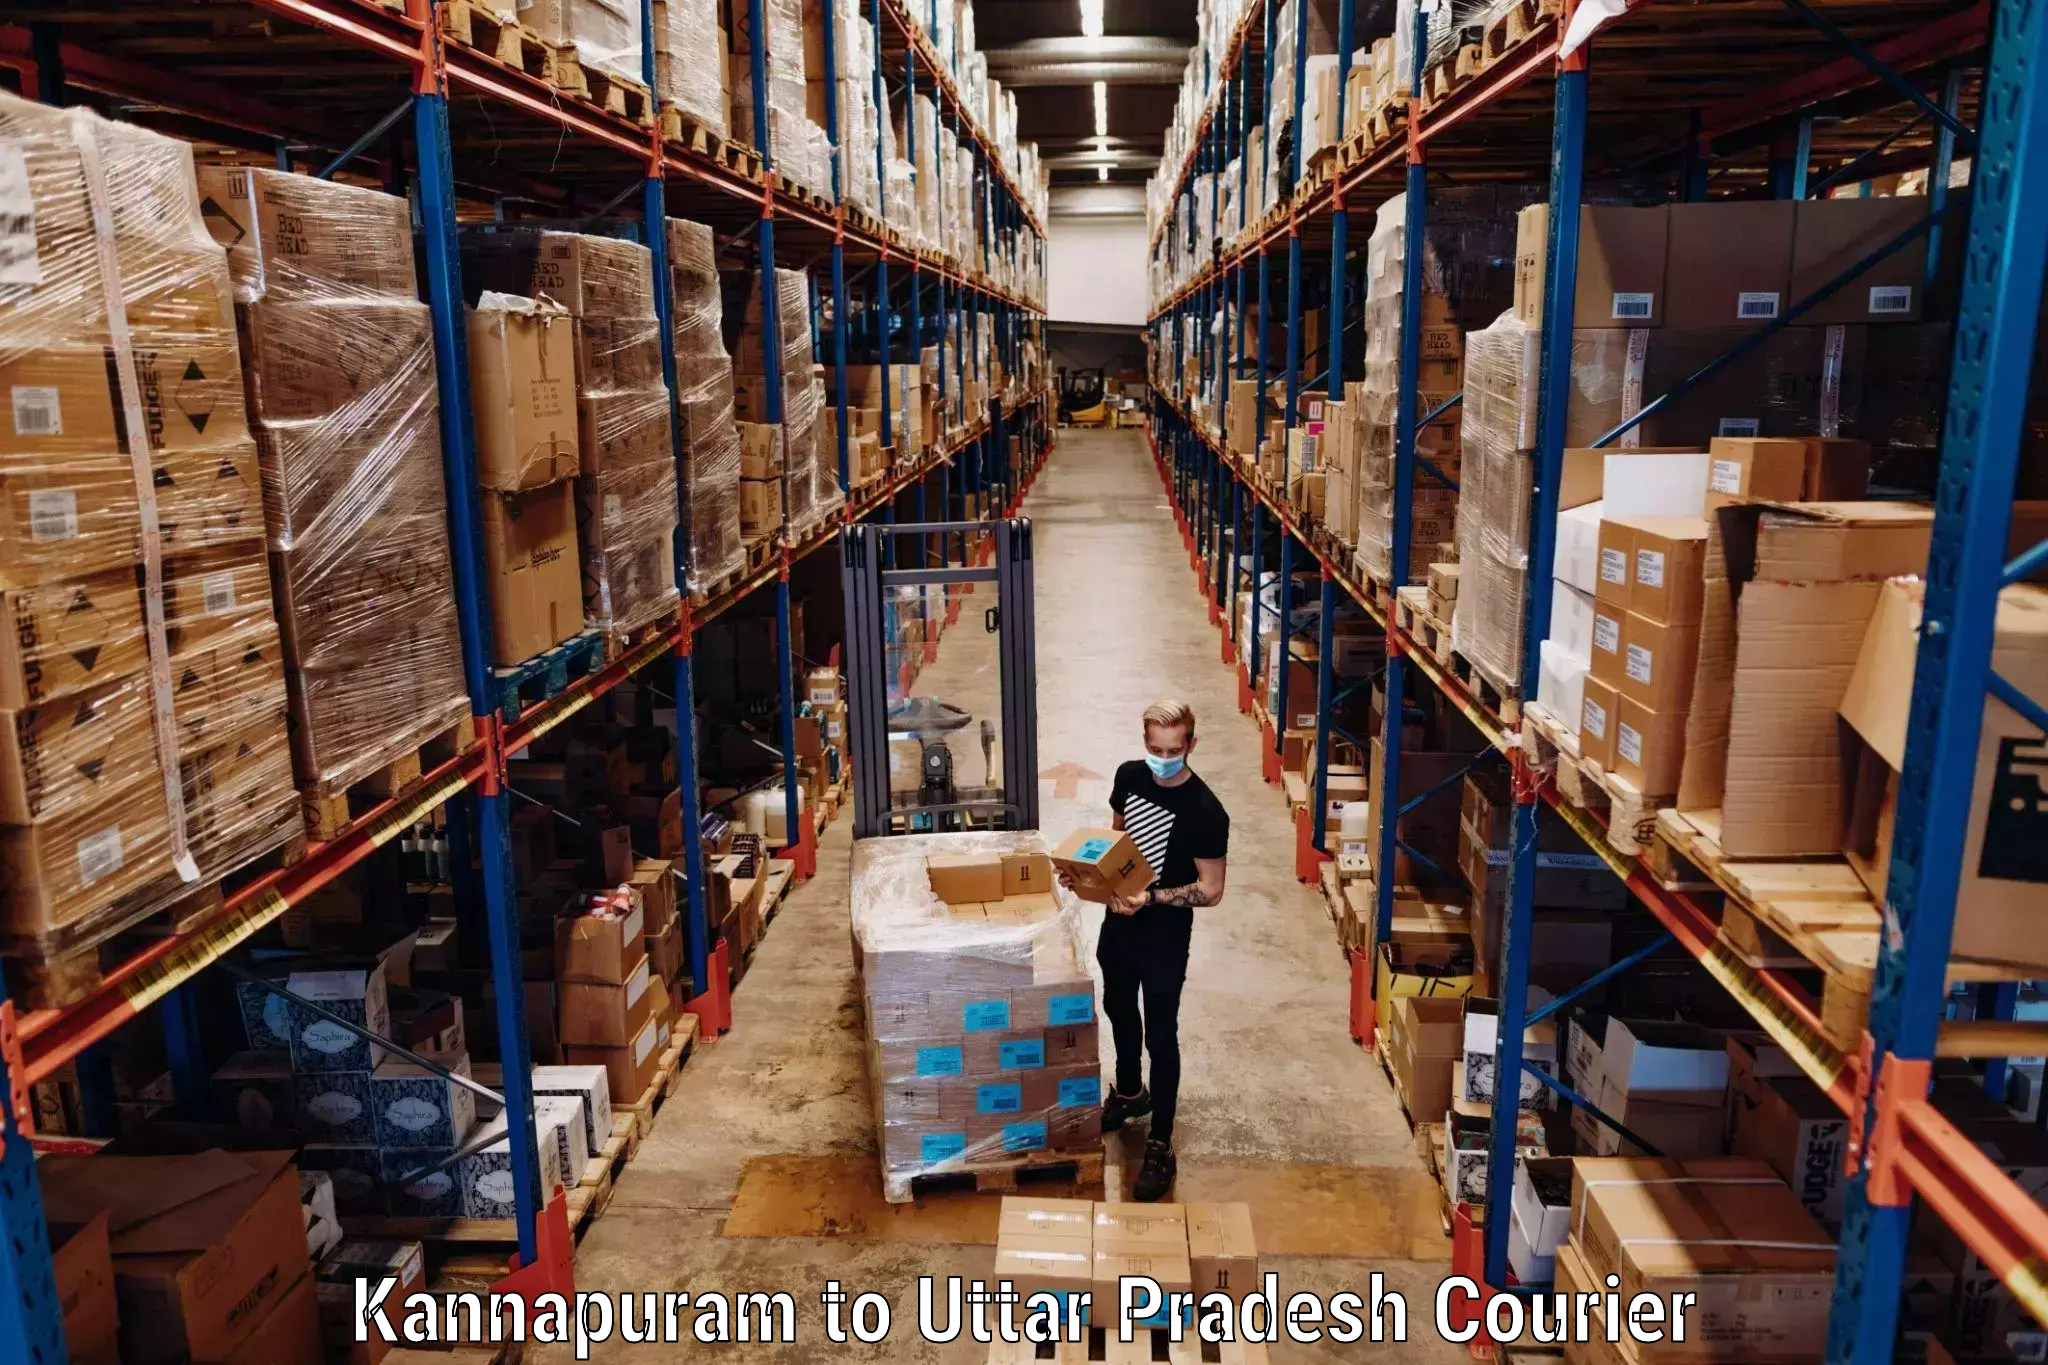 Baggage courier service Kannapuram to Uttar Pradesh